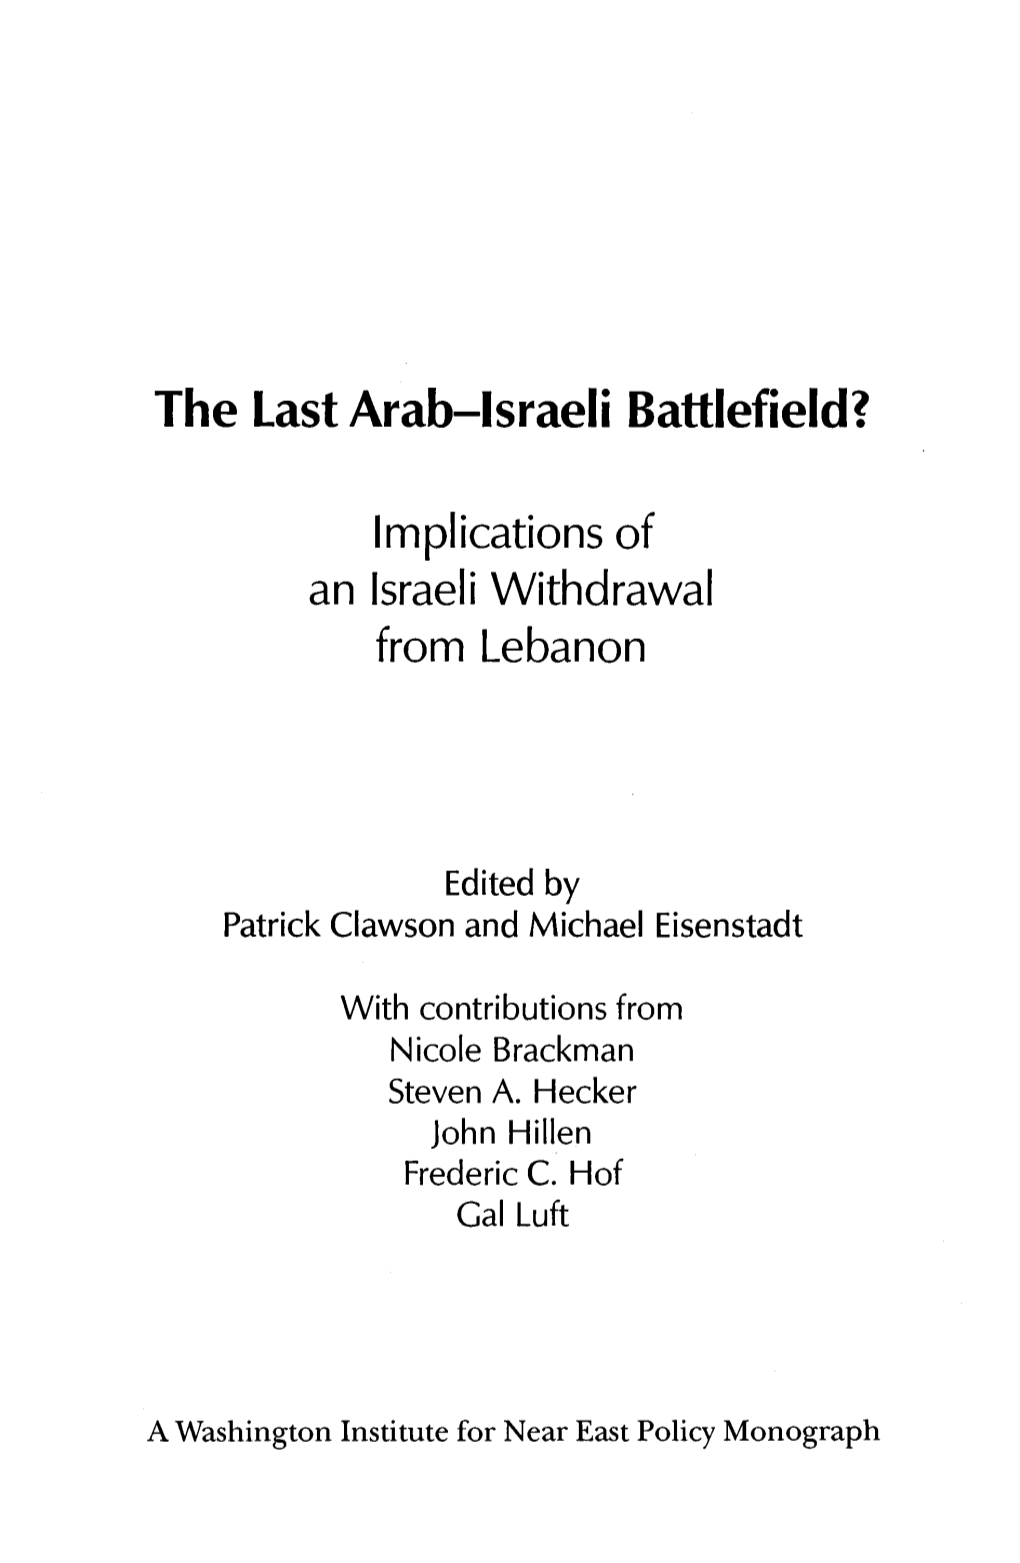 The Last Arab-Israeli Battlefield?